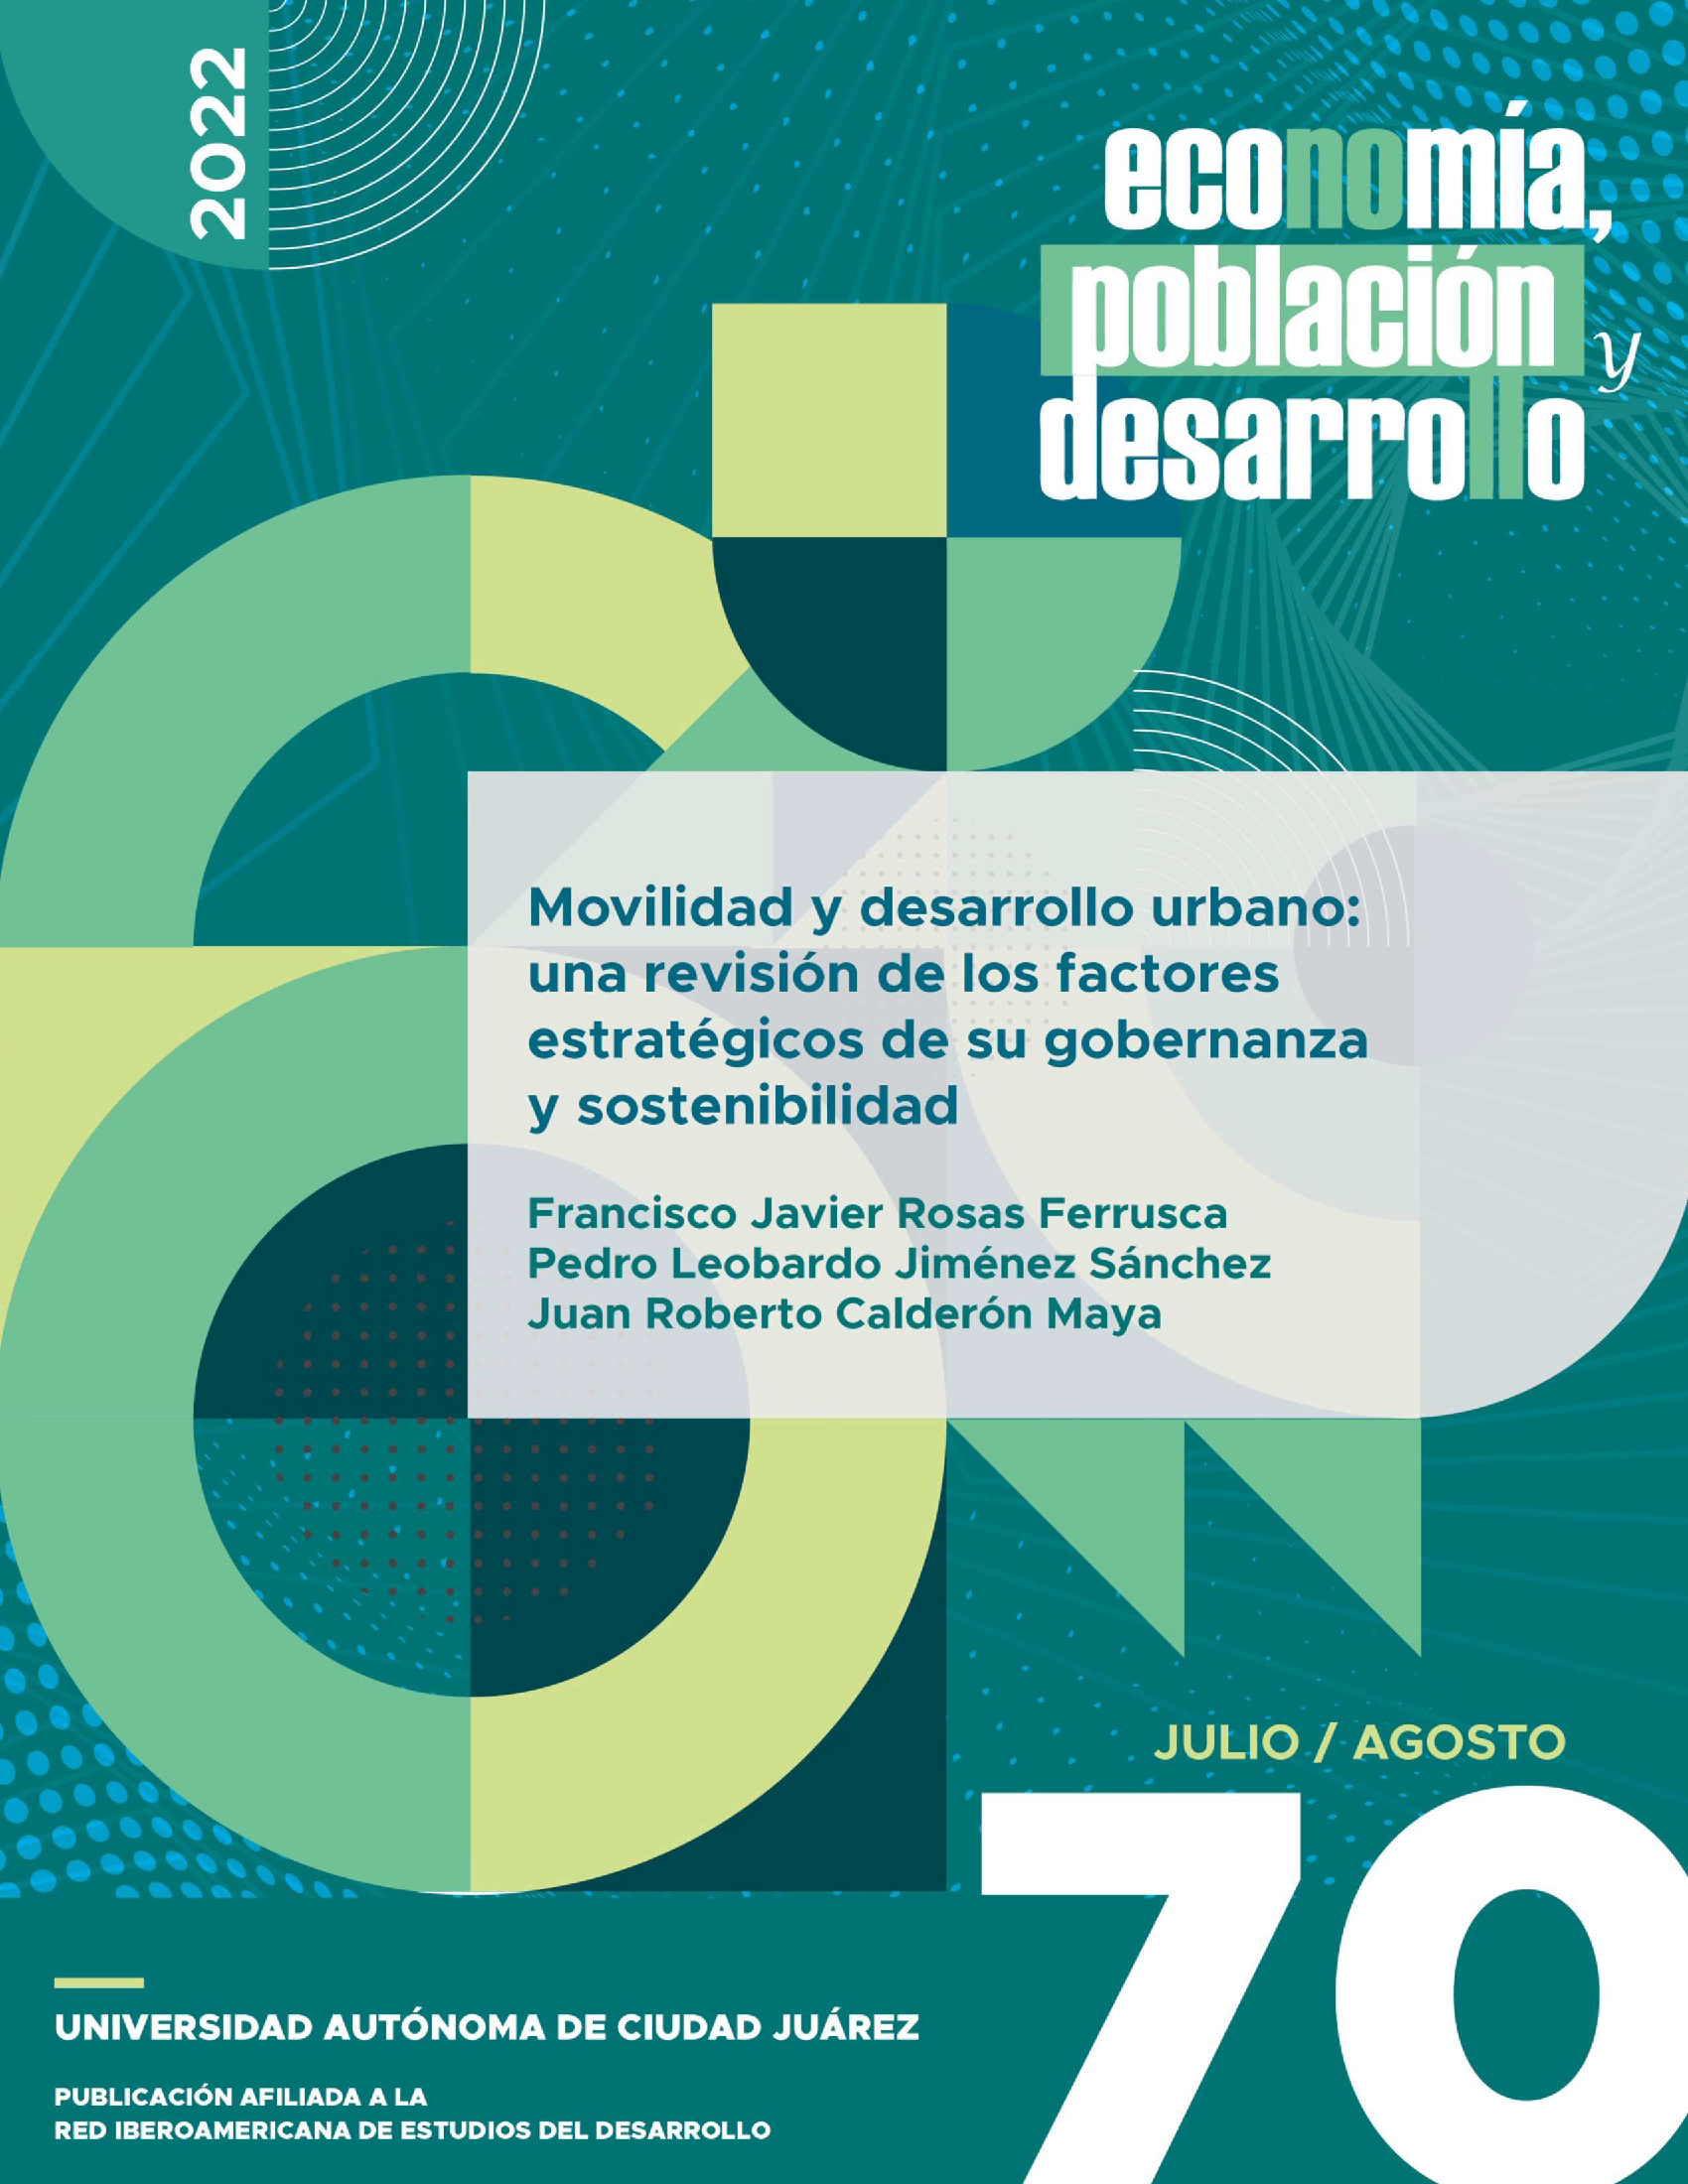 Movilidad y desarrollo urbano: una revisión de los factores estratégicos de su gobernanza y sostenibilidad